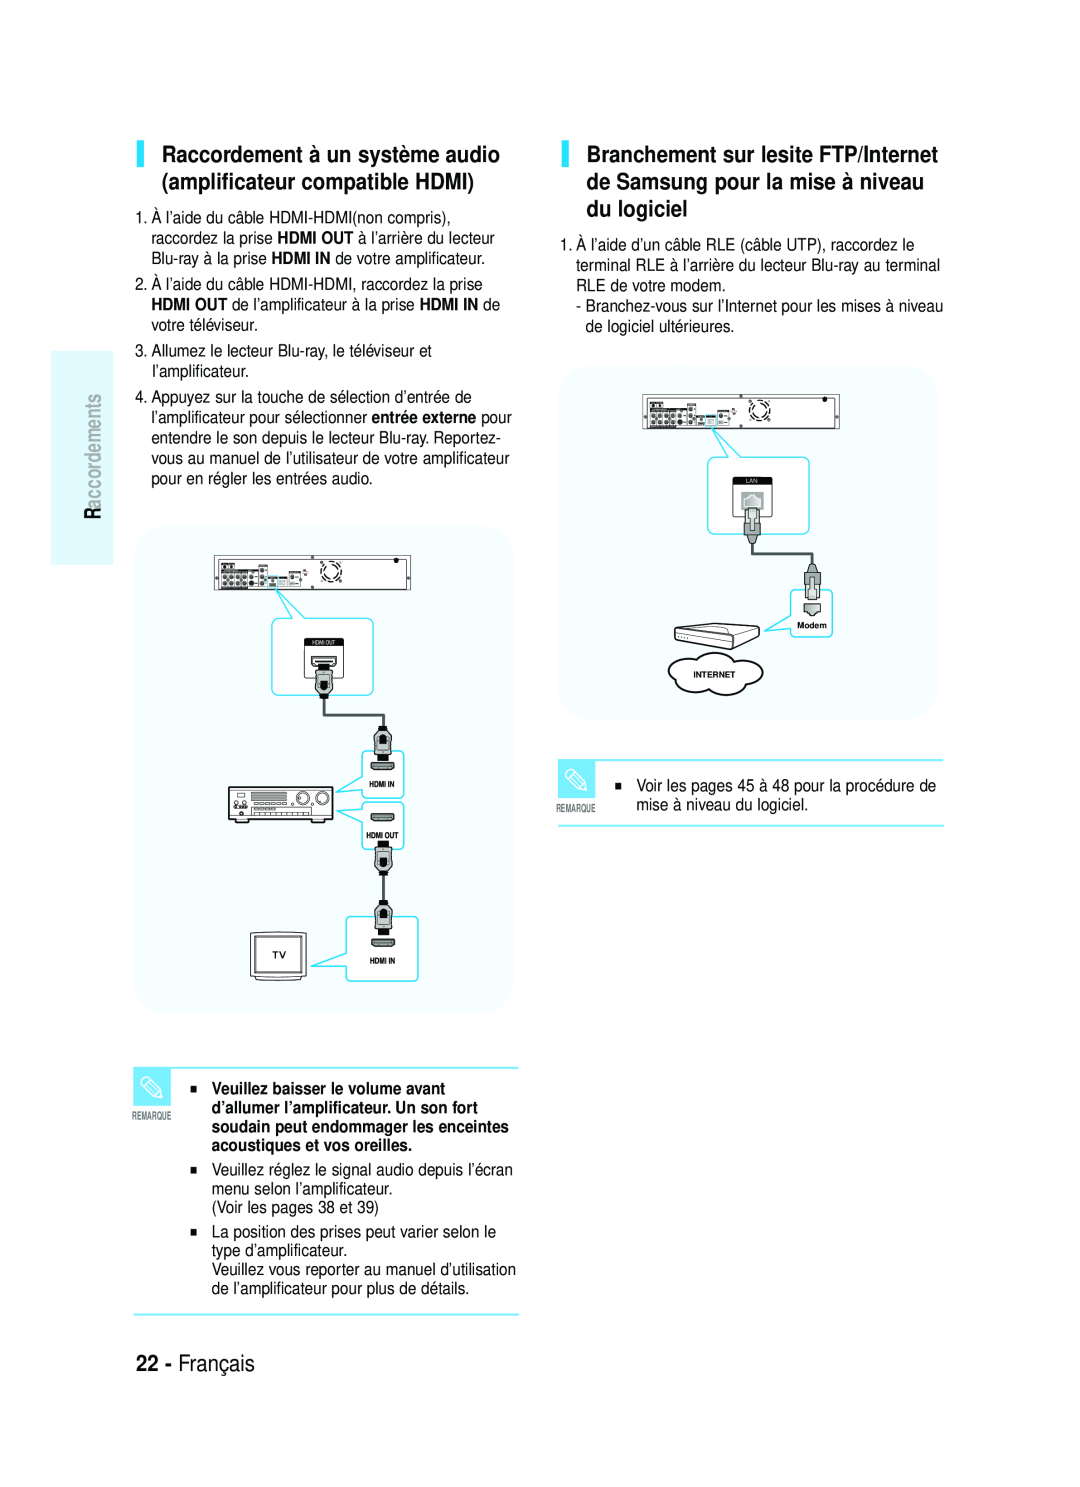 Samsung 20070320082319250 manual Français, Raccordement à un système audio amplificateur compatible HDMI, Raccordements 